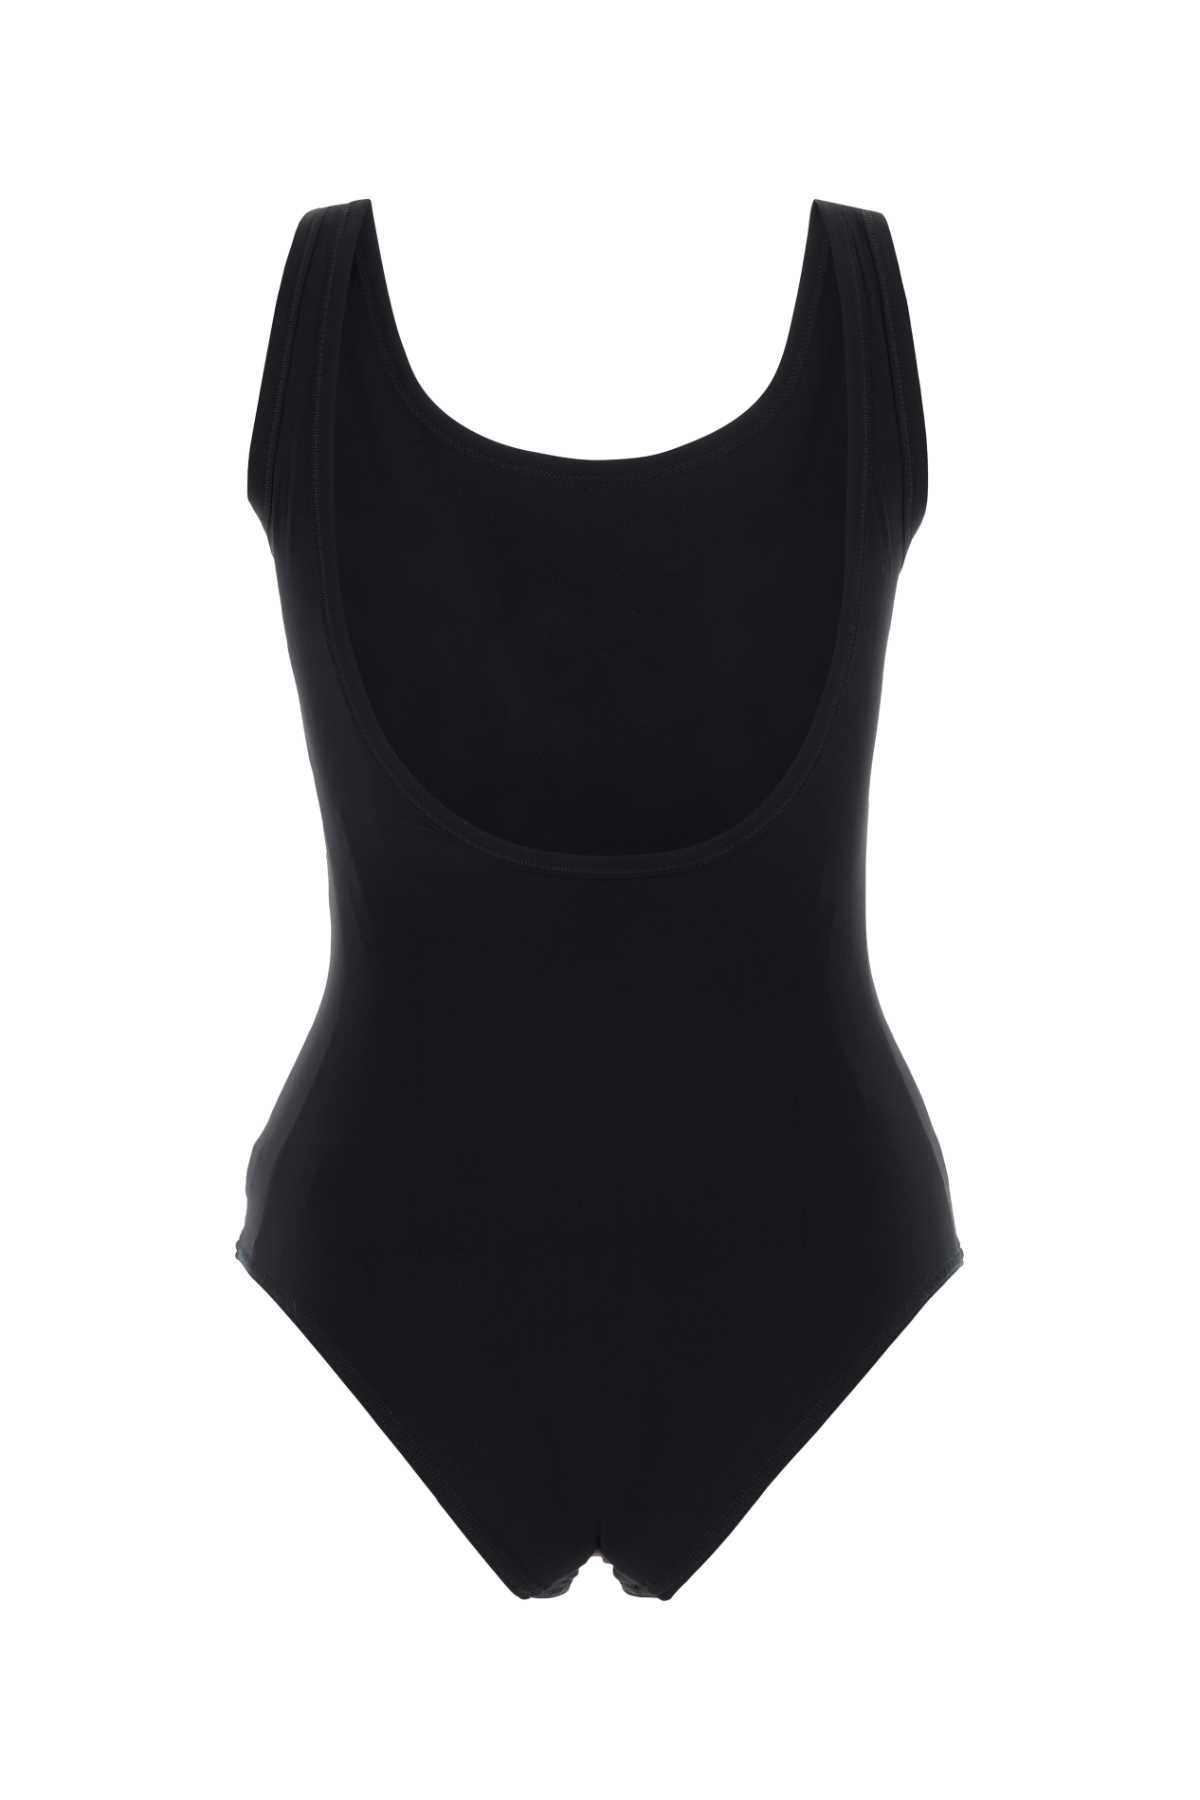 Jil Sander Black Stretch Nylon Swimsuit In 001